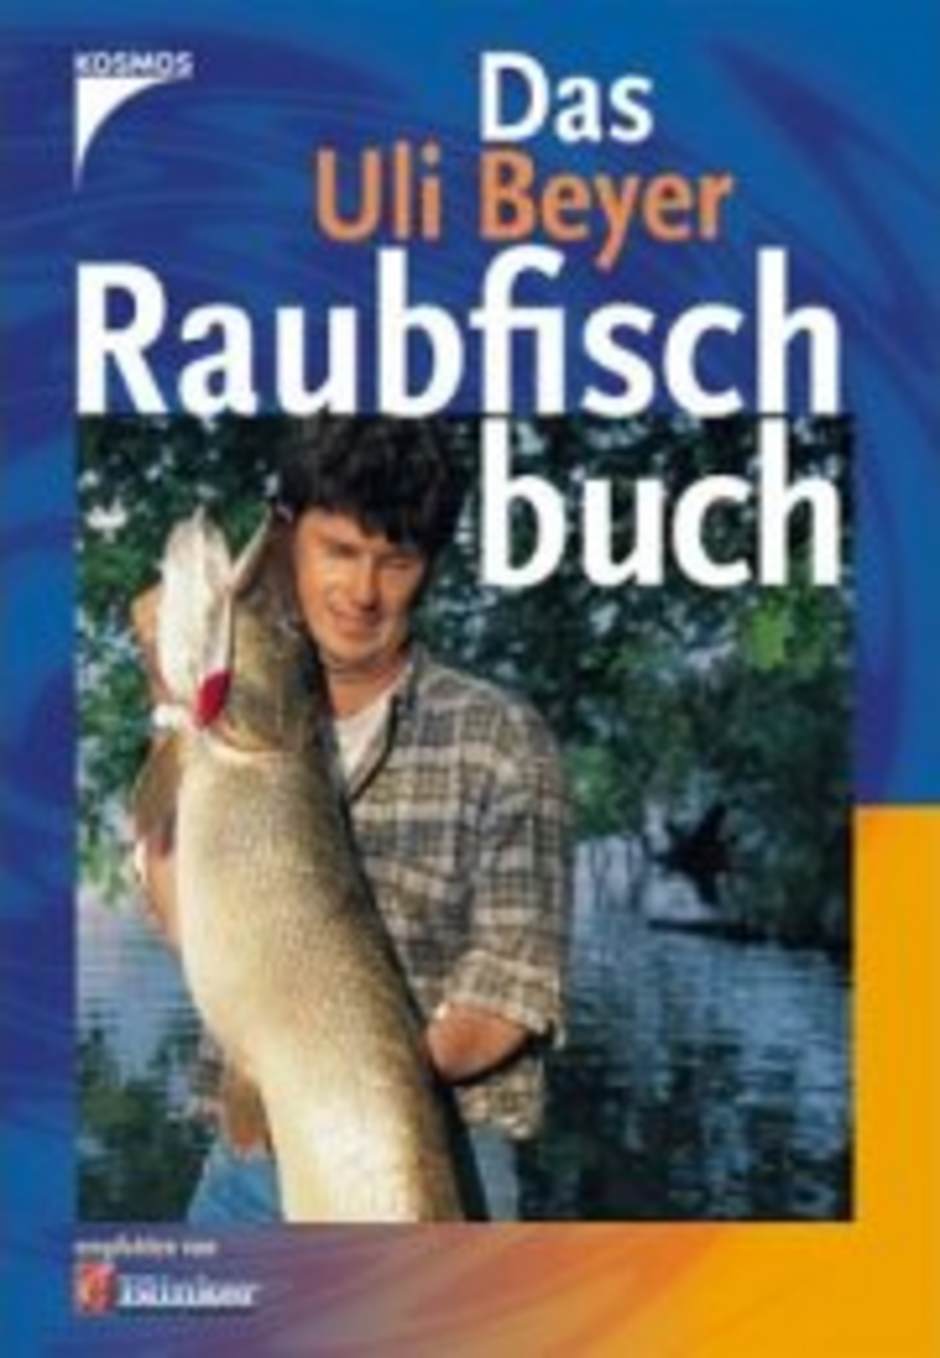  Das Uli Beyer Raubfischbuch